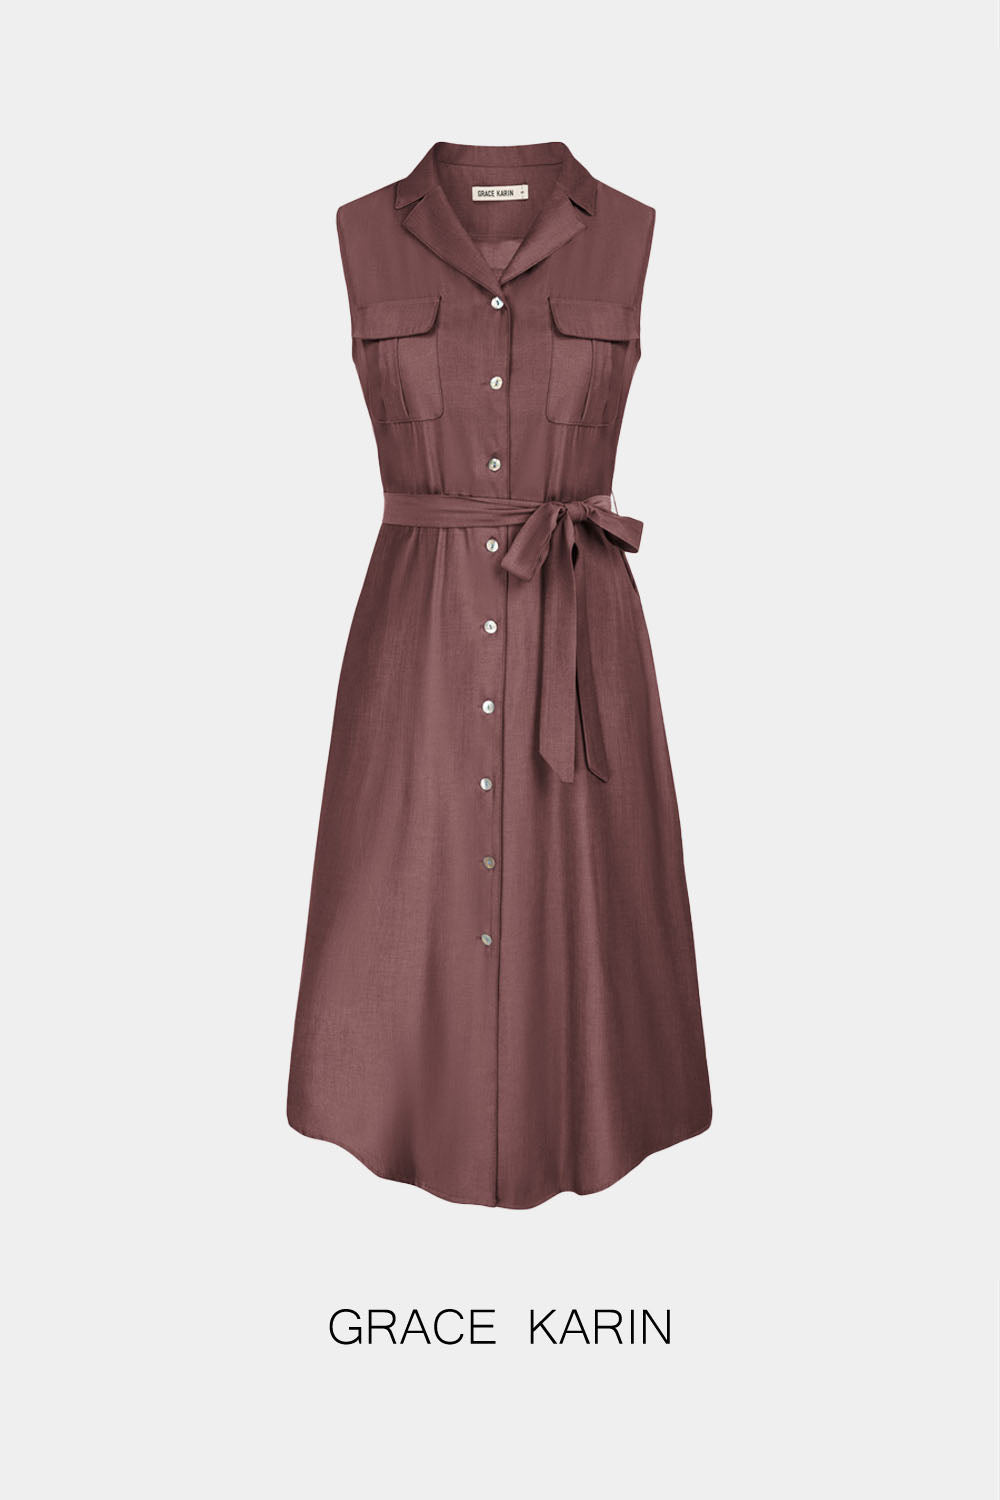 【Only $9.99】GRACE KARIN Lapel Collar Dress with Belt Sleeveless Dress